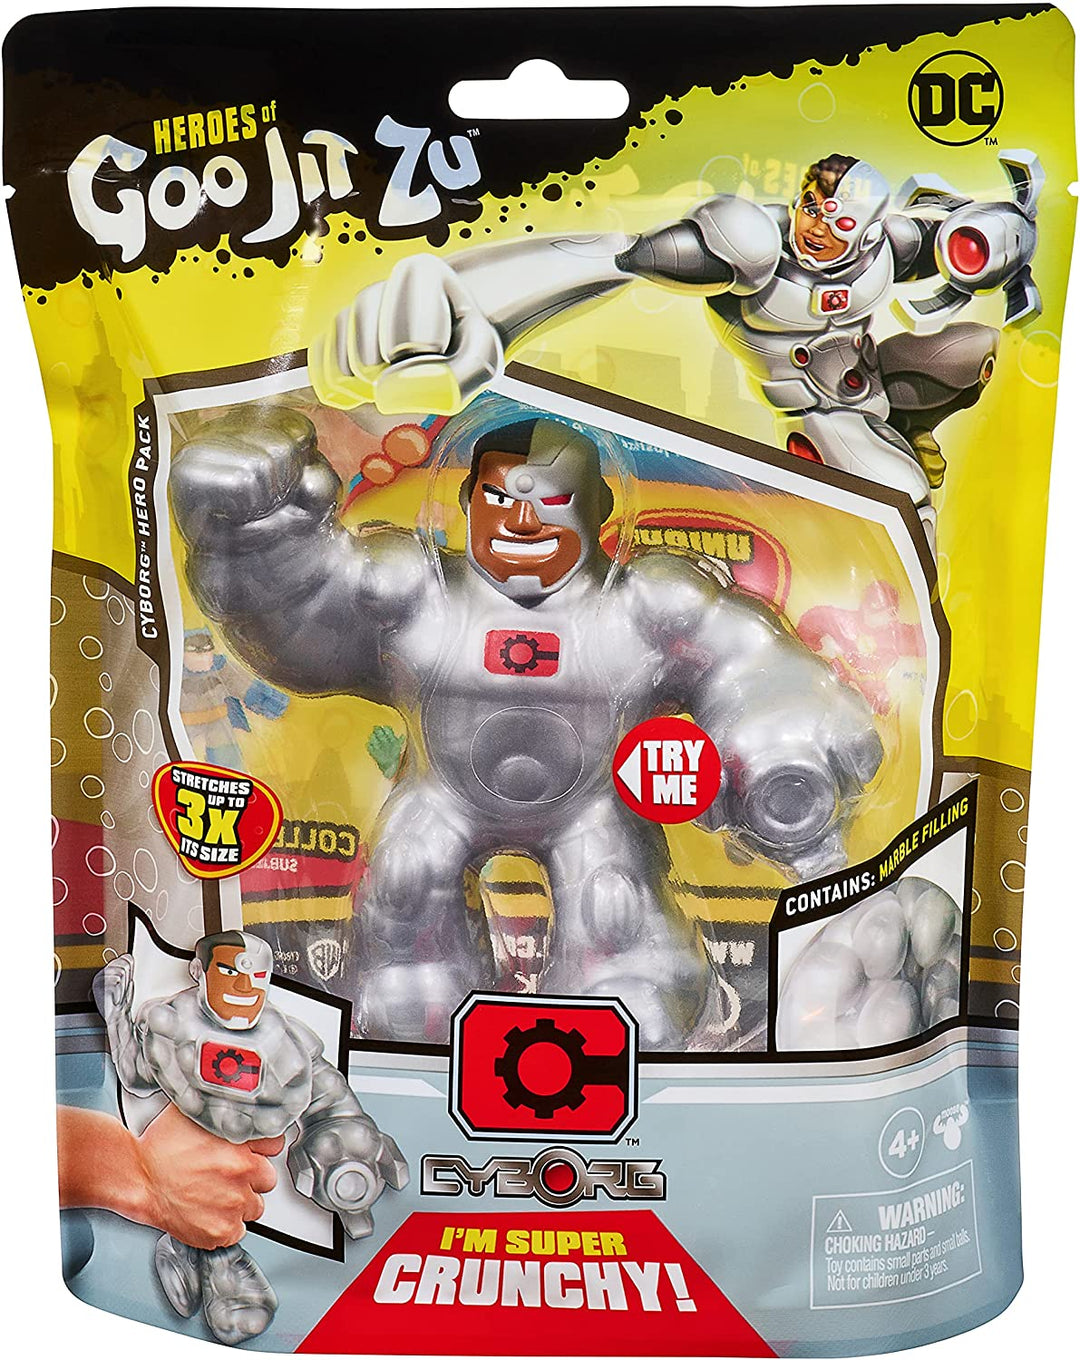 Heroes of Goo Jit Zu DC Super Heroes Cyborg Stretch Figure